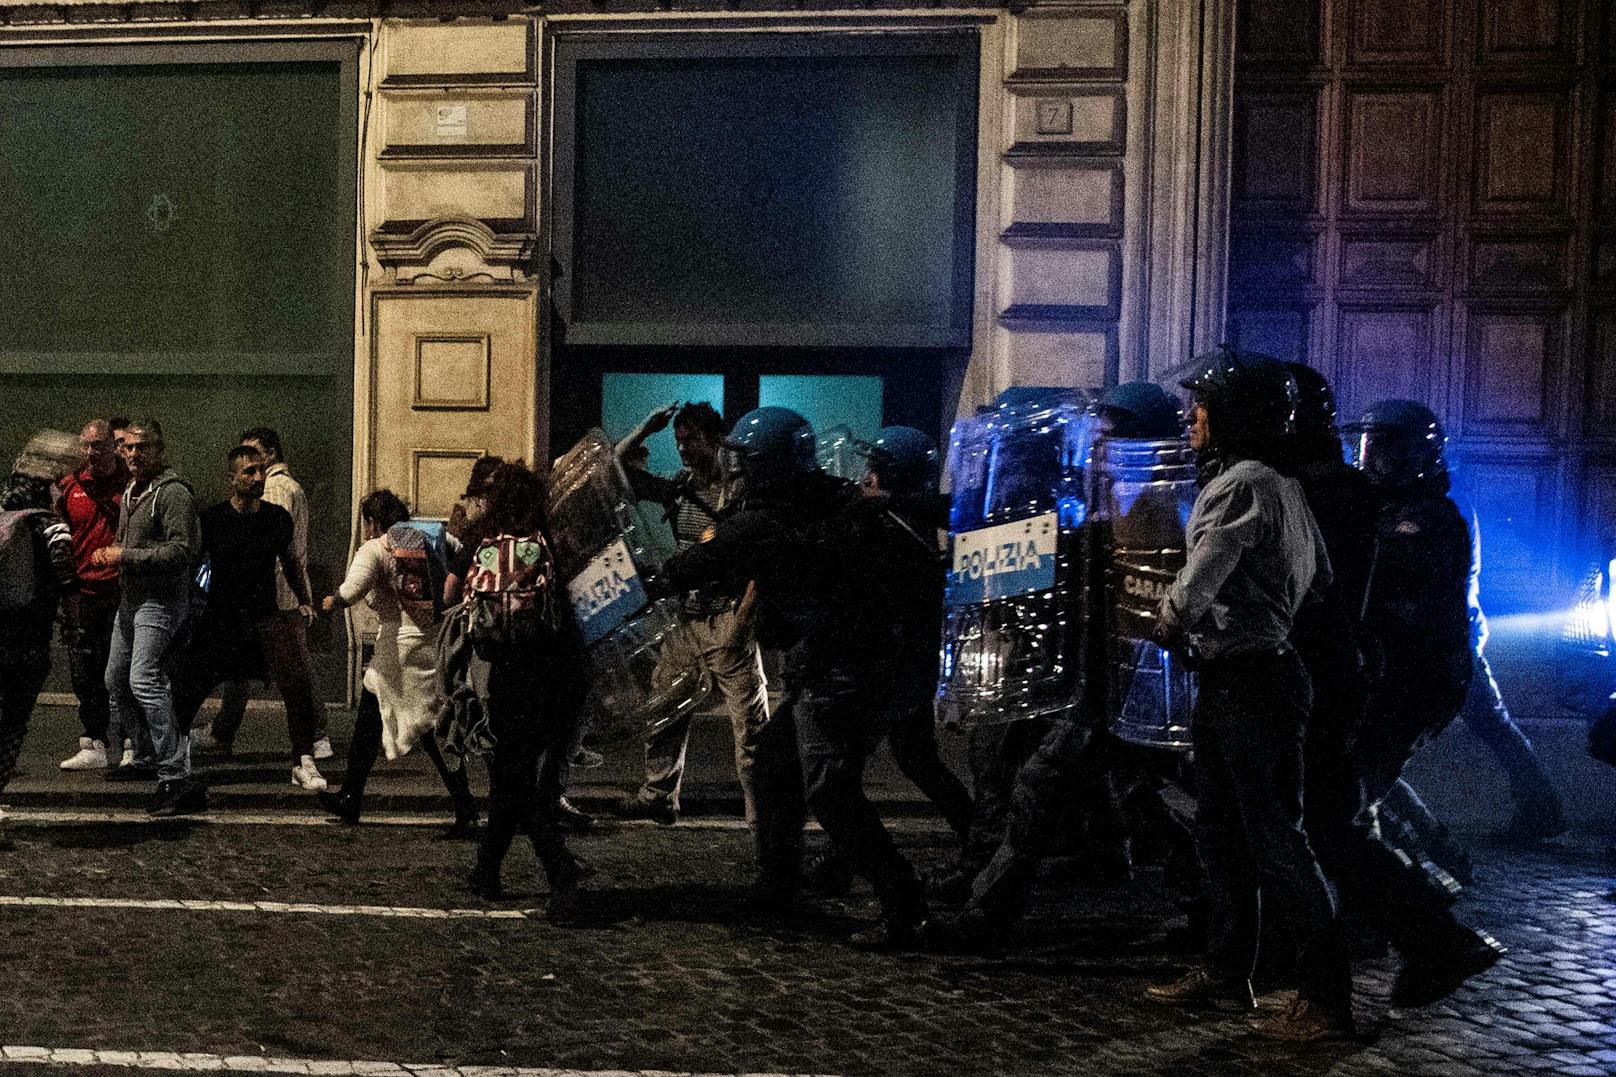 In Rom kam es nach einer Demonstration am Samstag zu Auseinandersetzungen zwischen der Polizei und gewalttätigen Demonstrierenden.